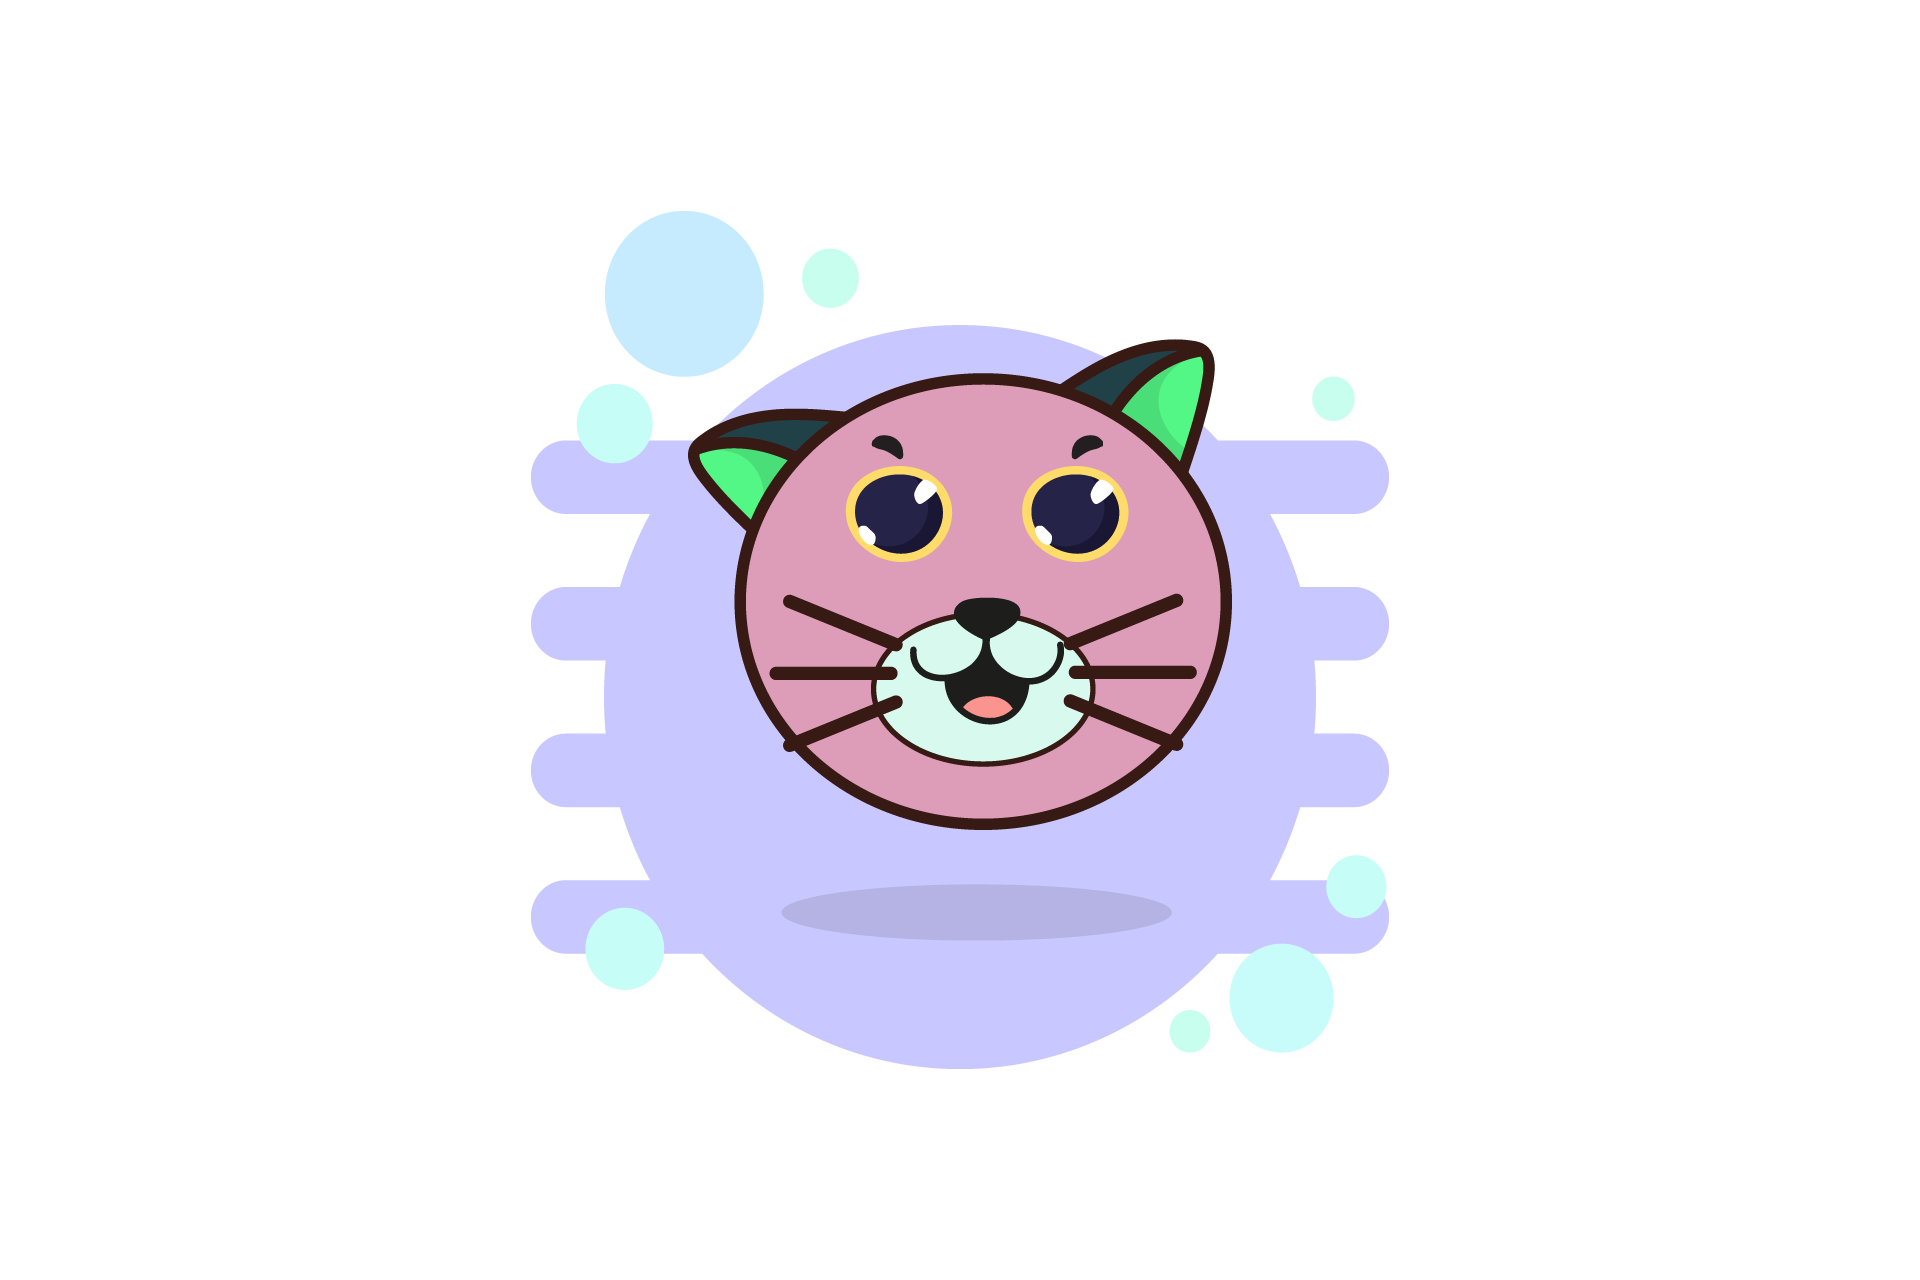 Cat Head Icon Graphic by Tigade std · Creative Fabrica